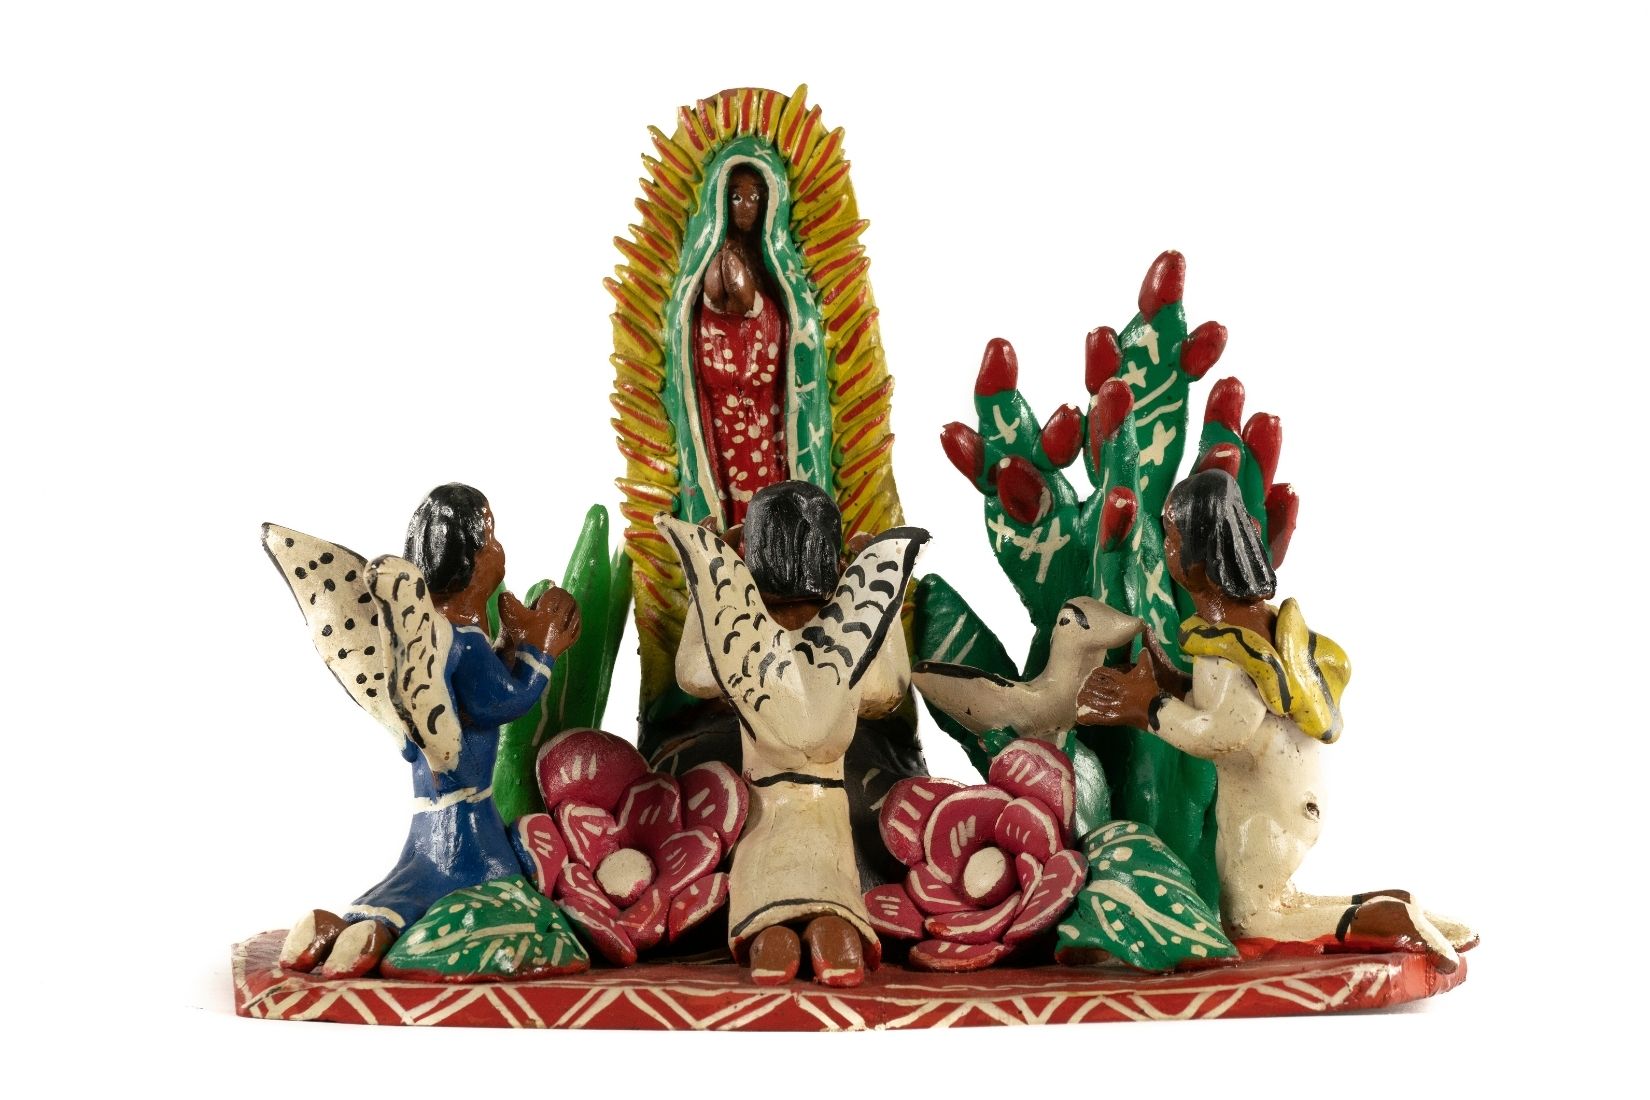 Virgen de Guadalupe de barro modelado, policromado y laqueado. Artesana Dolores Elias Hernández. Charapan, Ocumicho, Mich. Col. Part. (Foto: EKV).